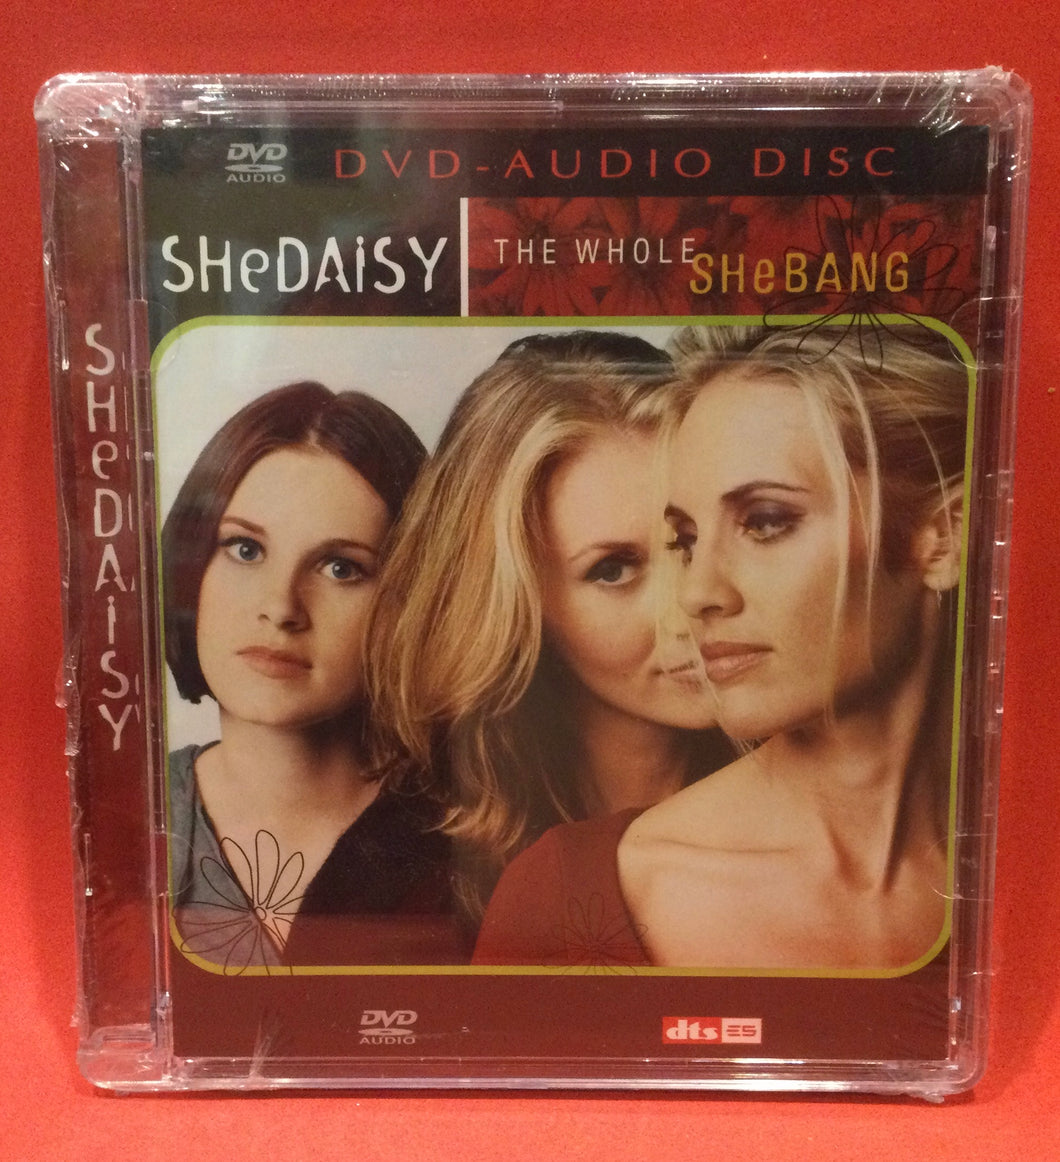 SHEDAISY - THE WHOLE SHEBANG - DVD-AUDIO (SEALED)